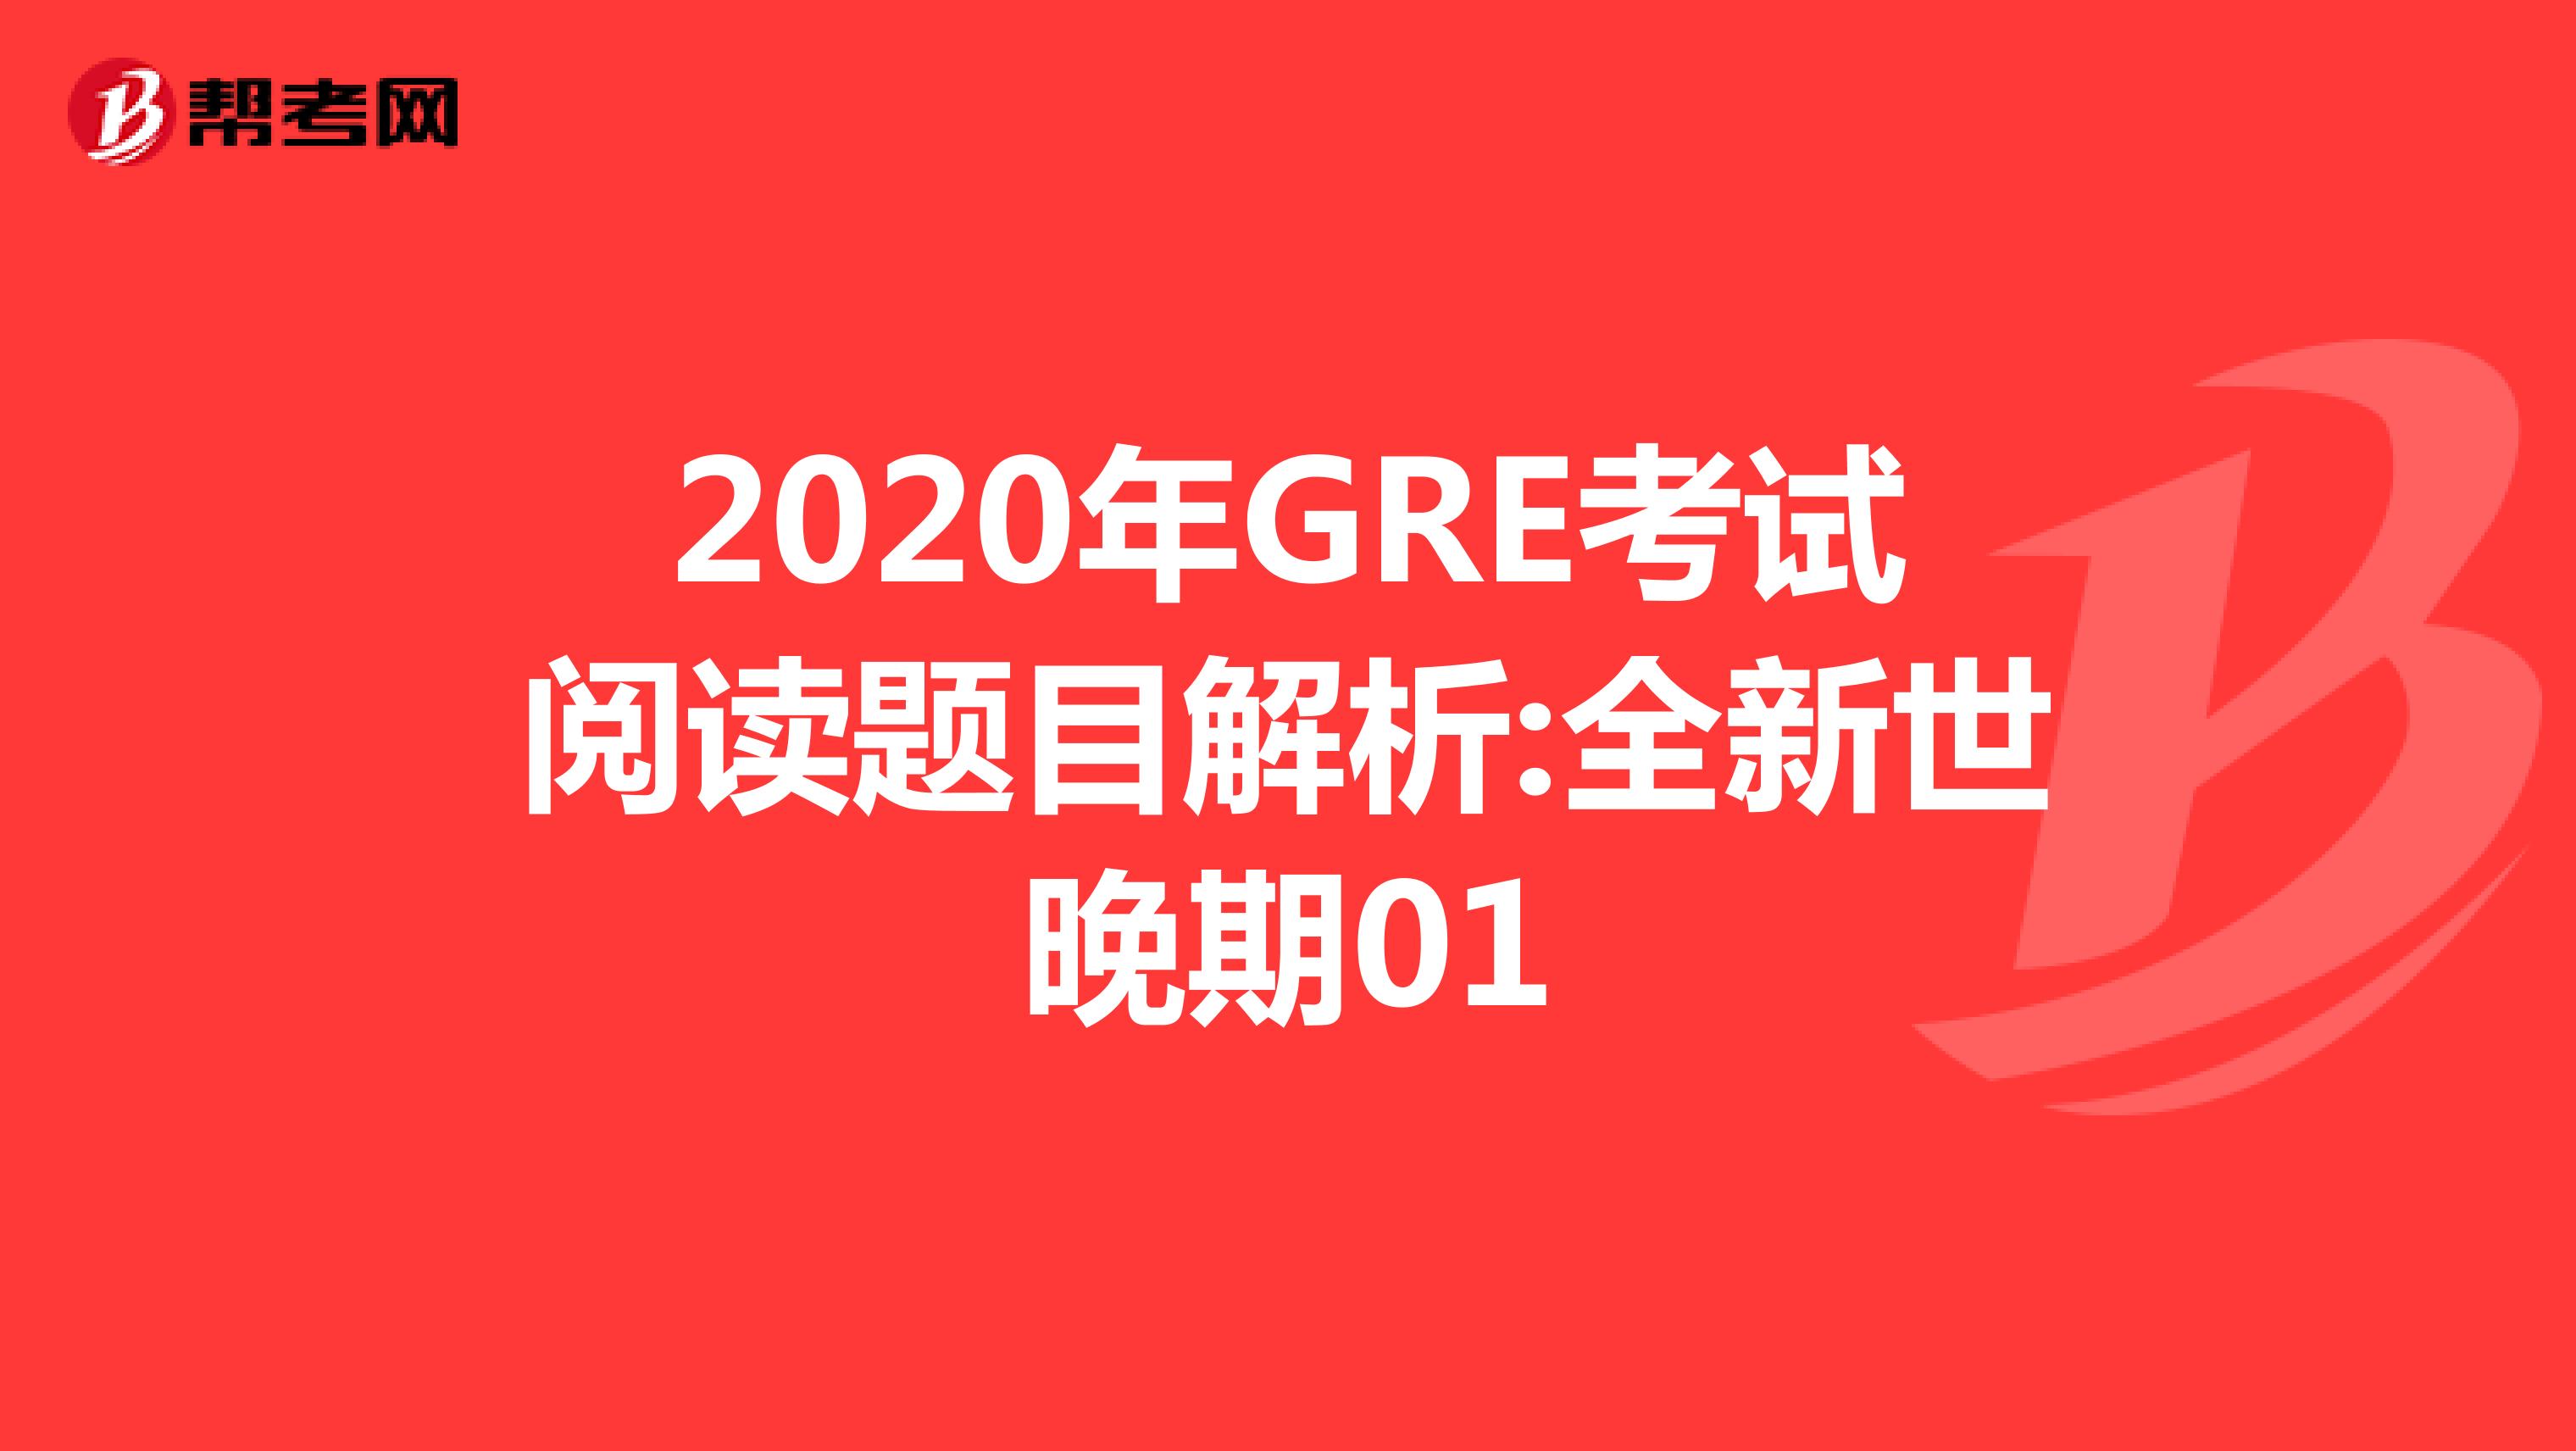 2020年GRE考试阅读题目解析:全新世晚期01